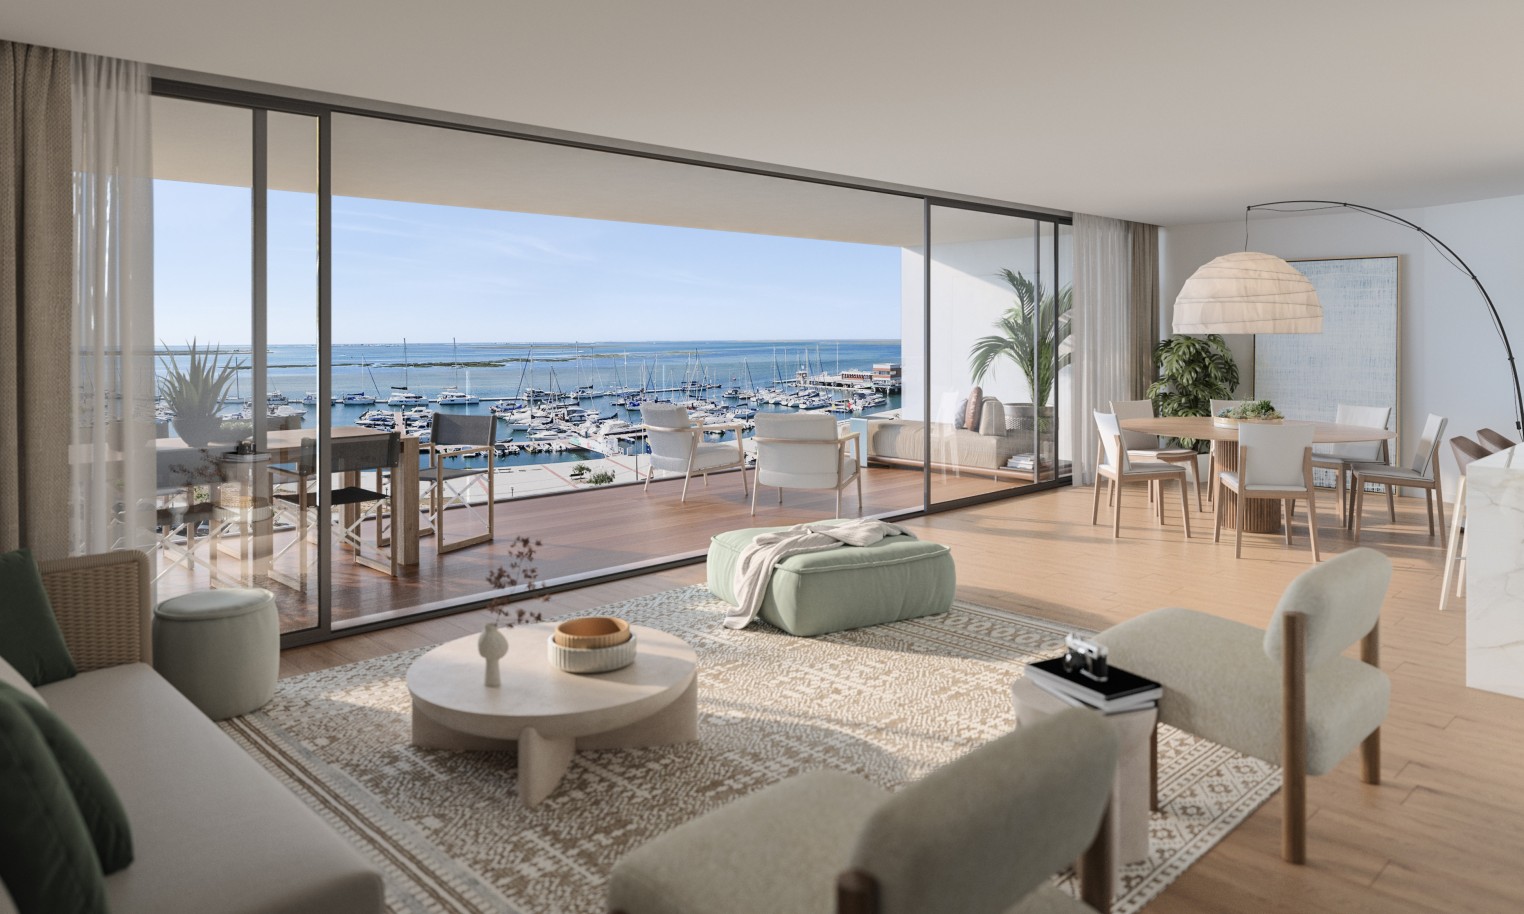 Pisos nuevos con vistas al mar, 1, 2 y 3 dormitorios, en venta en Olhão, Algarve_244334